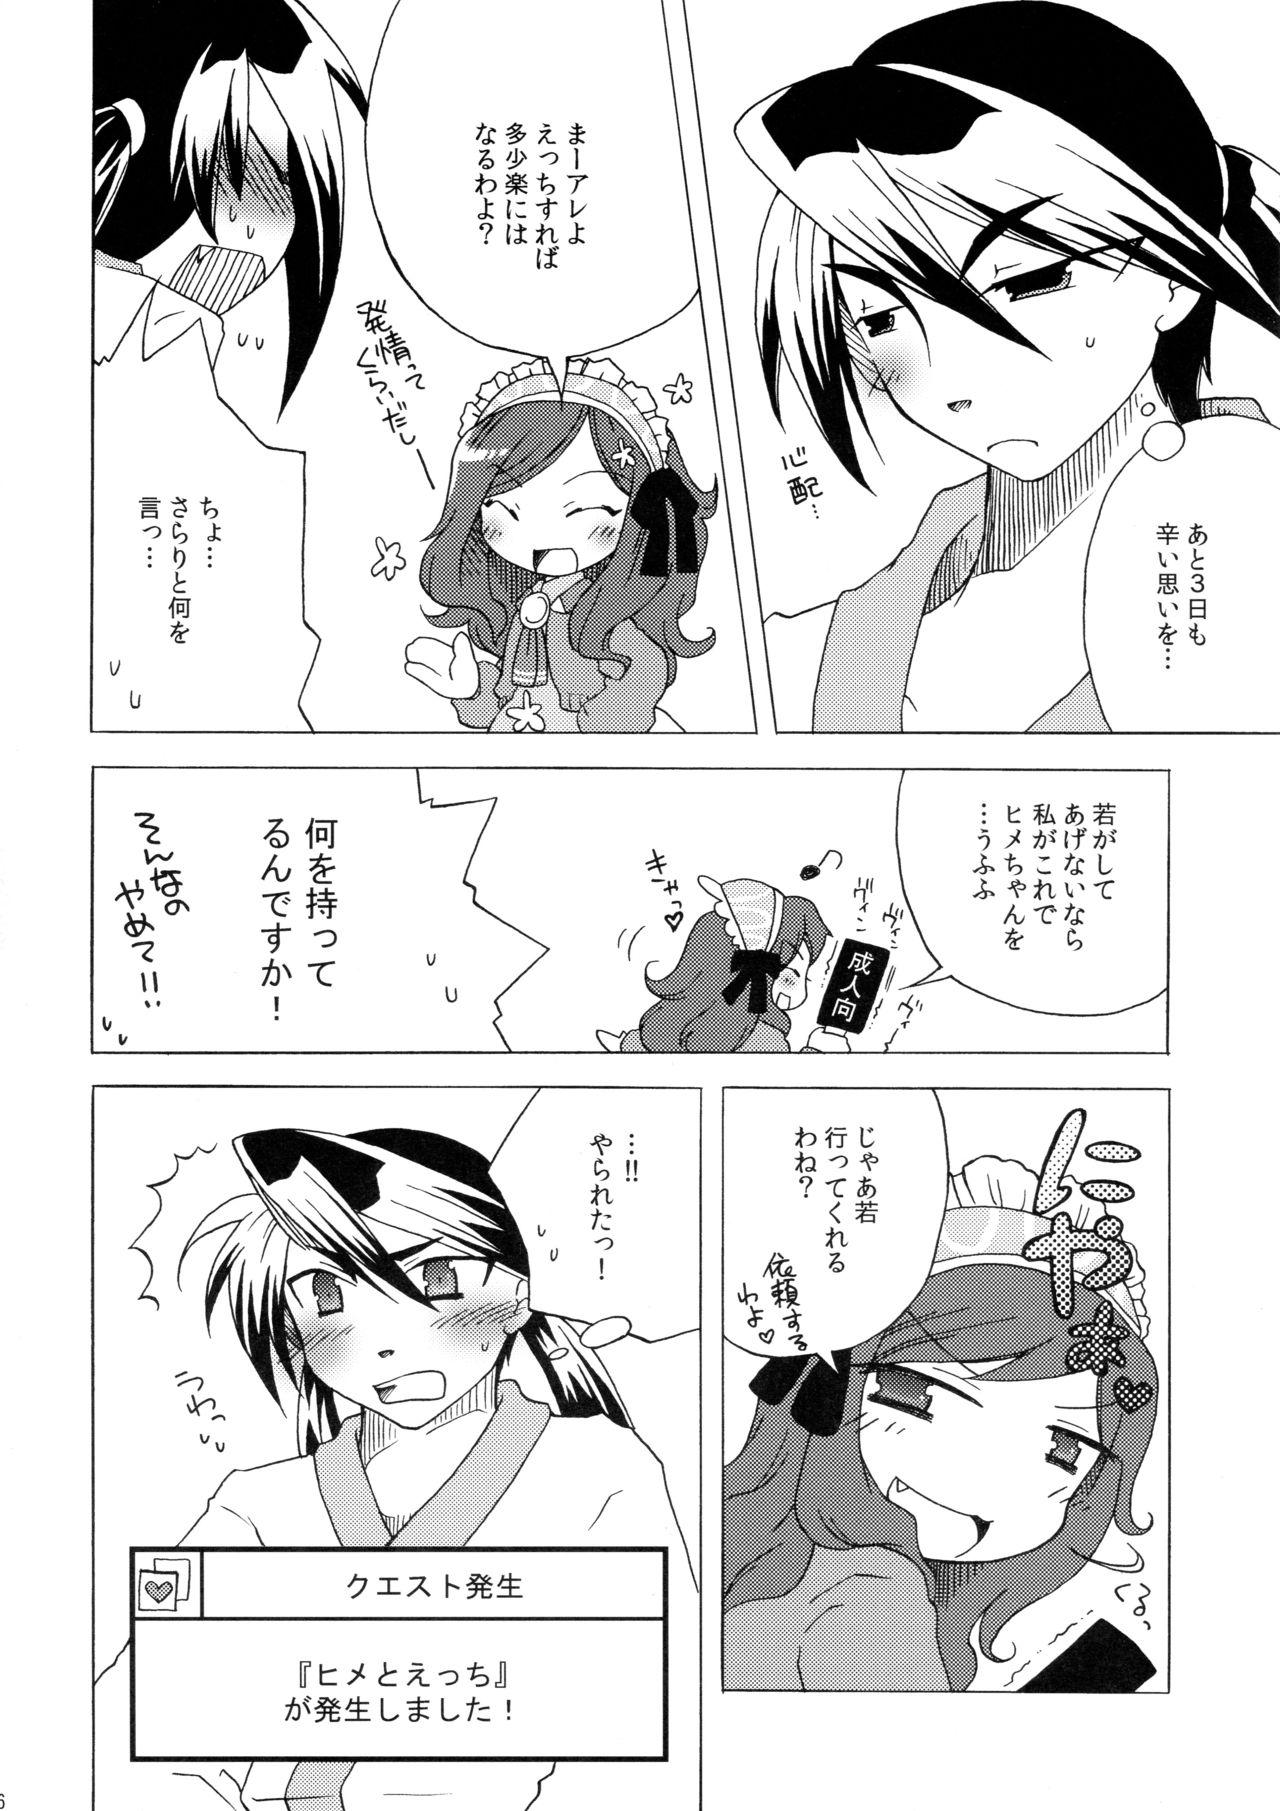 Cum Inside Waka Utsu no Hajimete. - 7th dragon Lips - Page 6